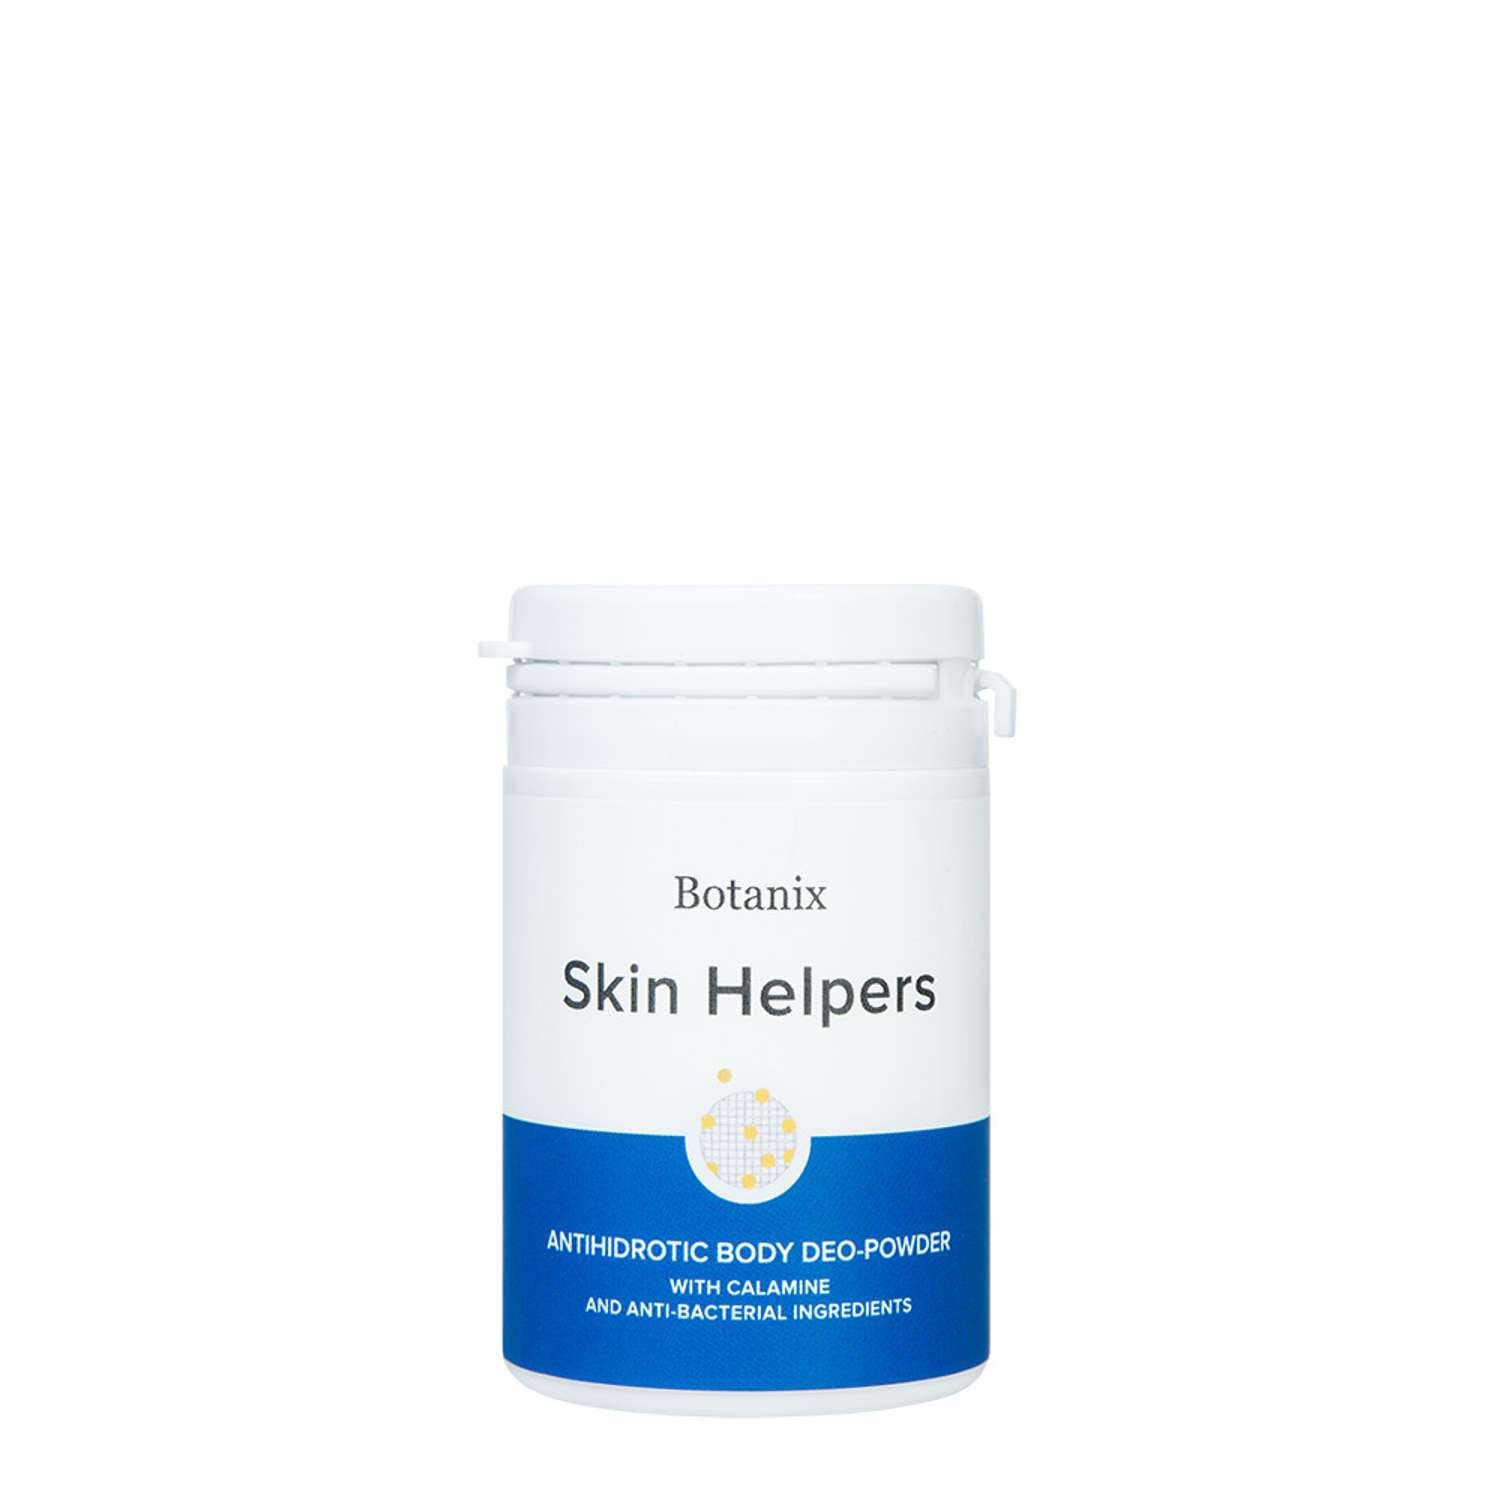 Антигидрозная део-пудра Skin Helpers для тела с каламином и антибактериальными компонентами 50 г - фото 1